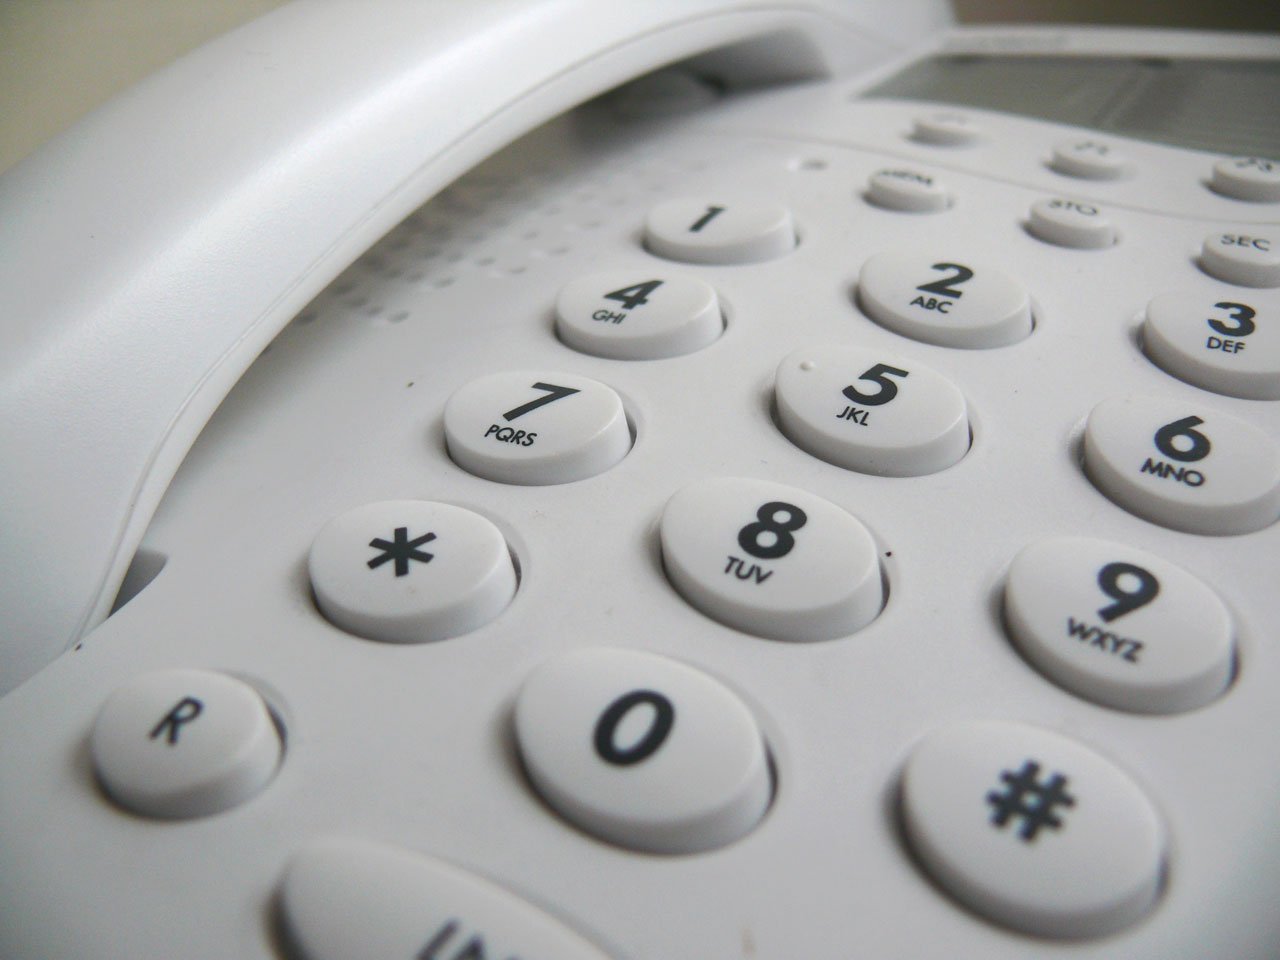 固定電話の権利は譲渡、継承、改称が可能。中古権利の売買も